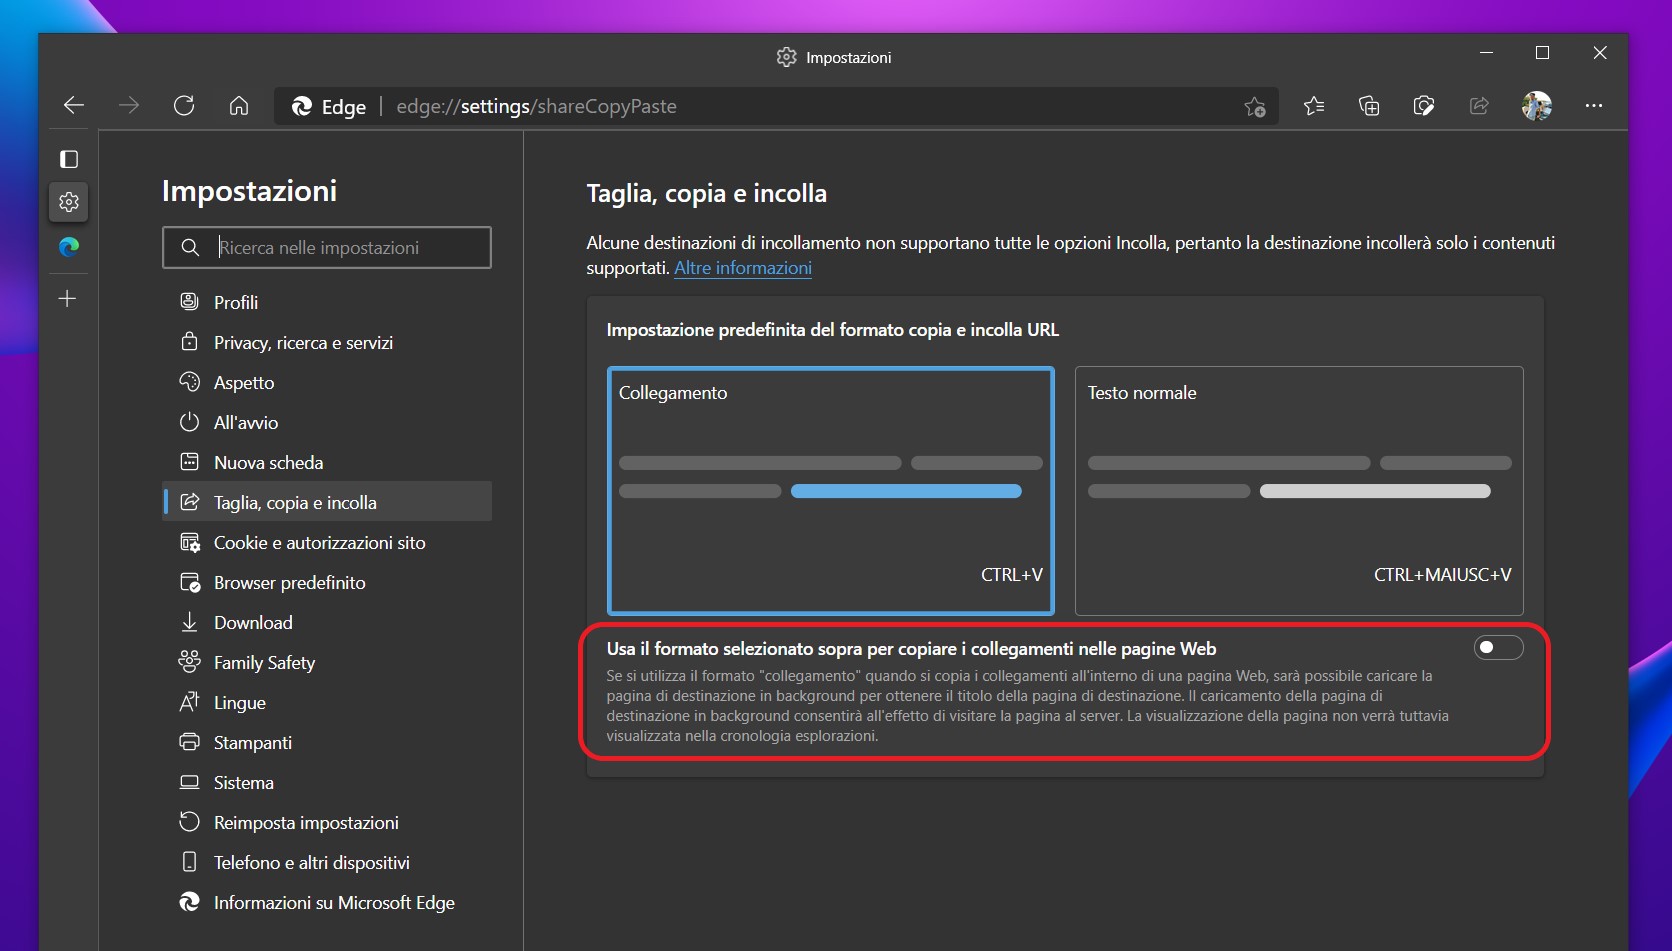 Microsoft Edge - Impostazioni taglia copia e incolla